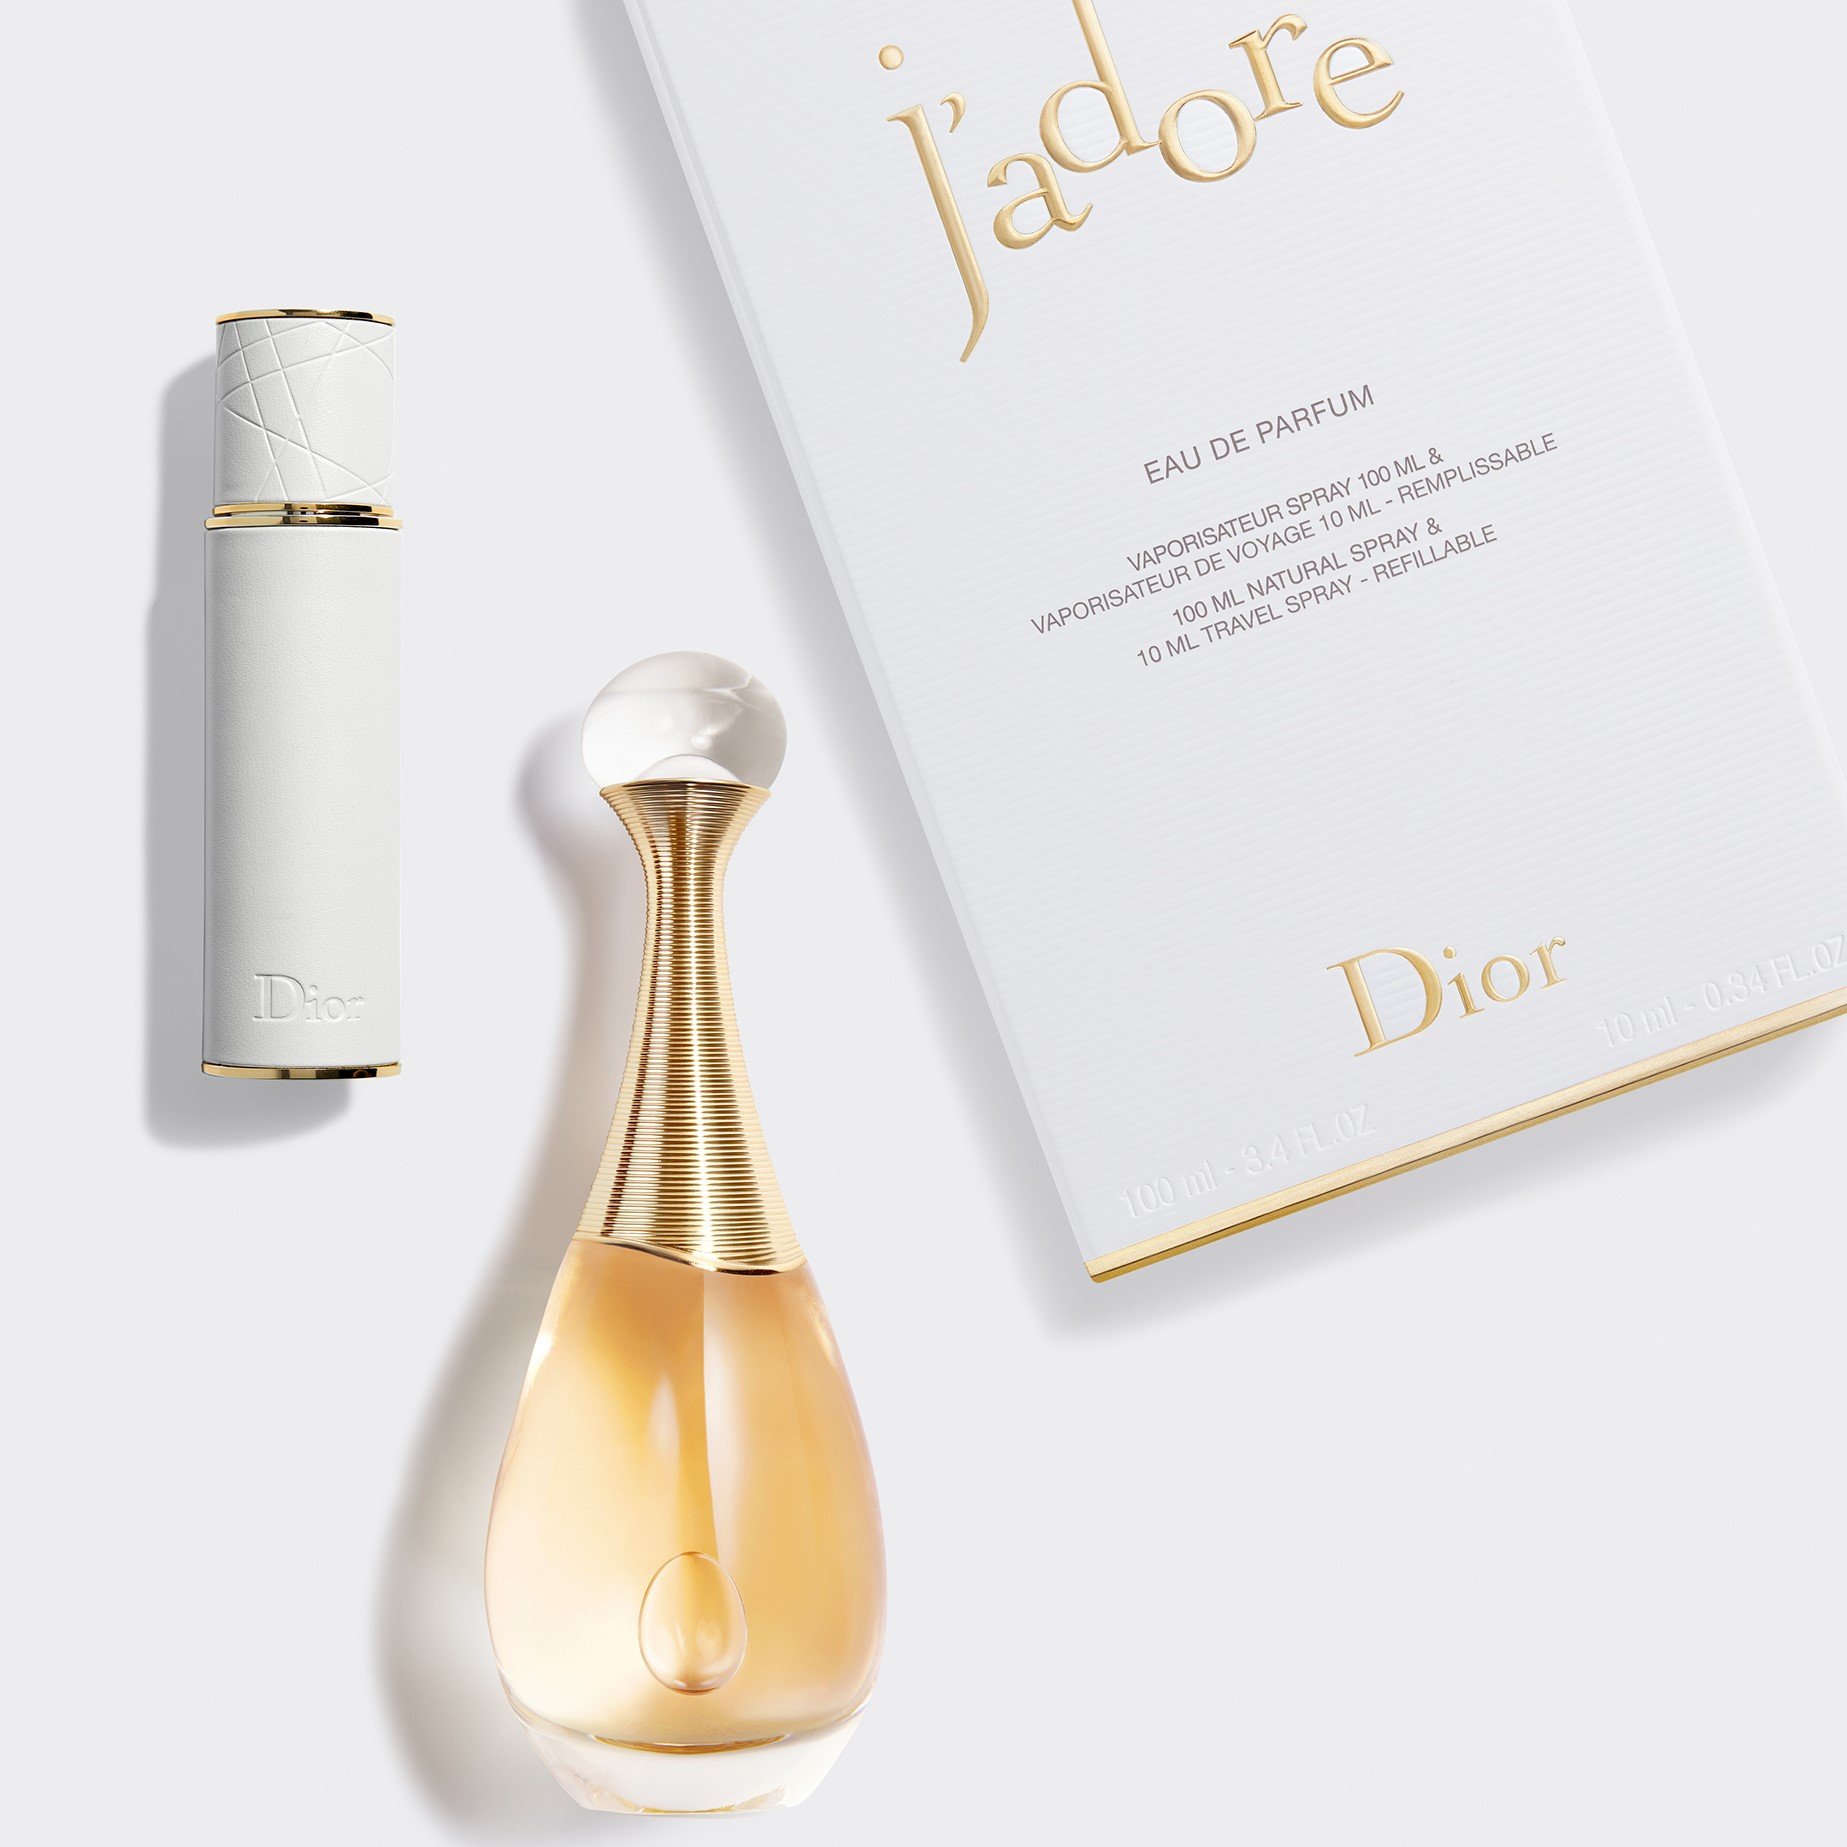 Nước hoa nữ Dior Jadore In Joy EDT tinh tế sống động rực rỡ 100ml